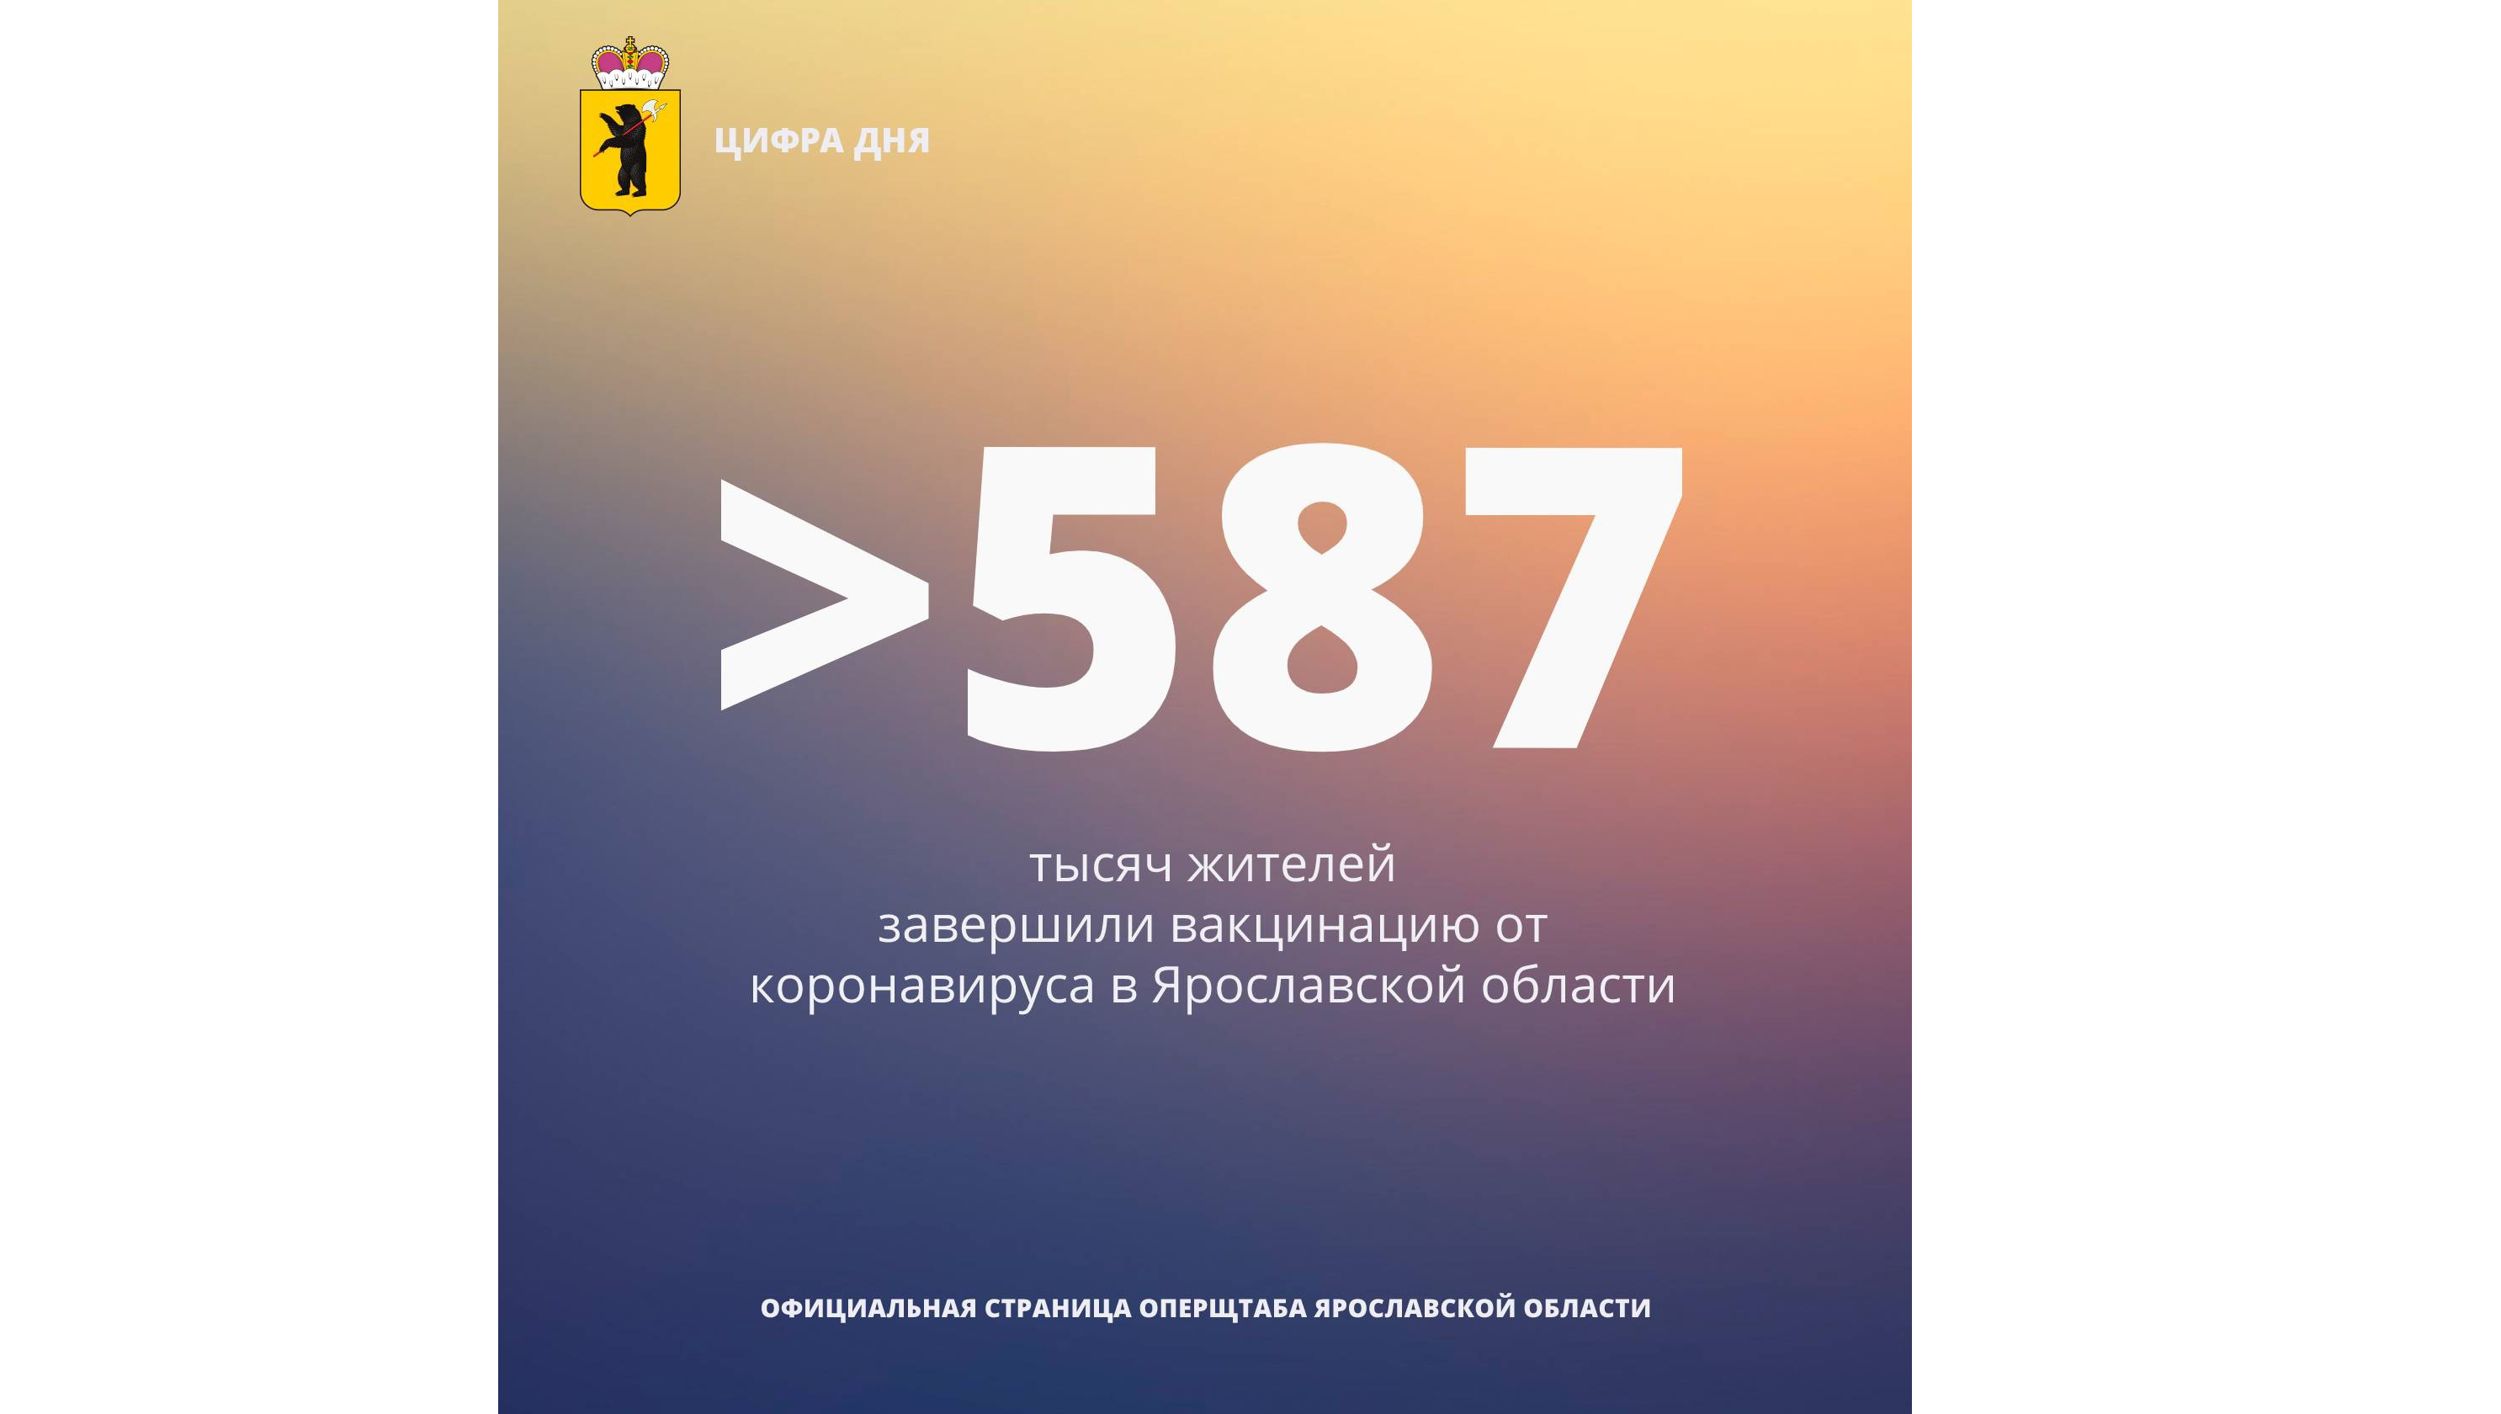 В Ярославской области вакцинировались от коронавируса больше 587 тысяч человек